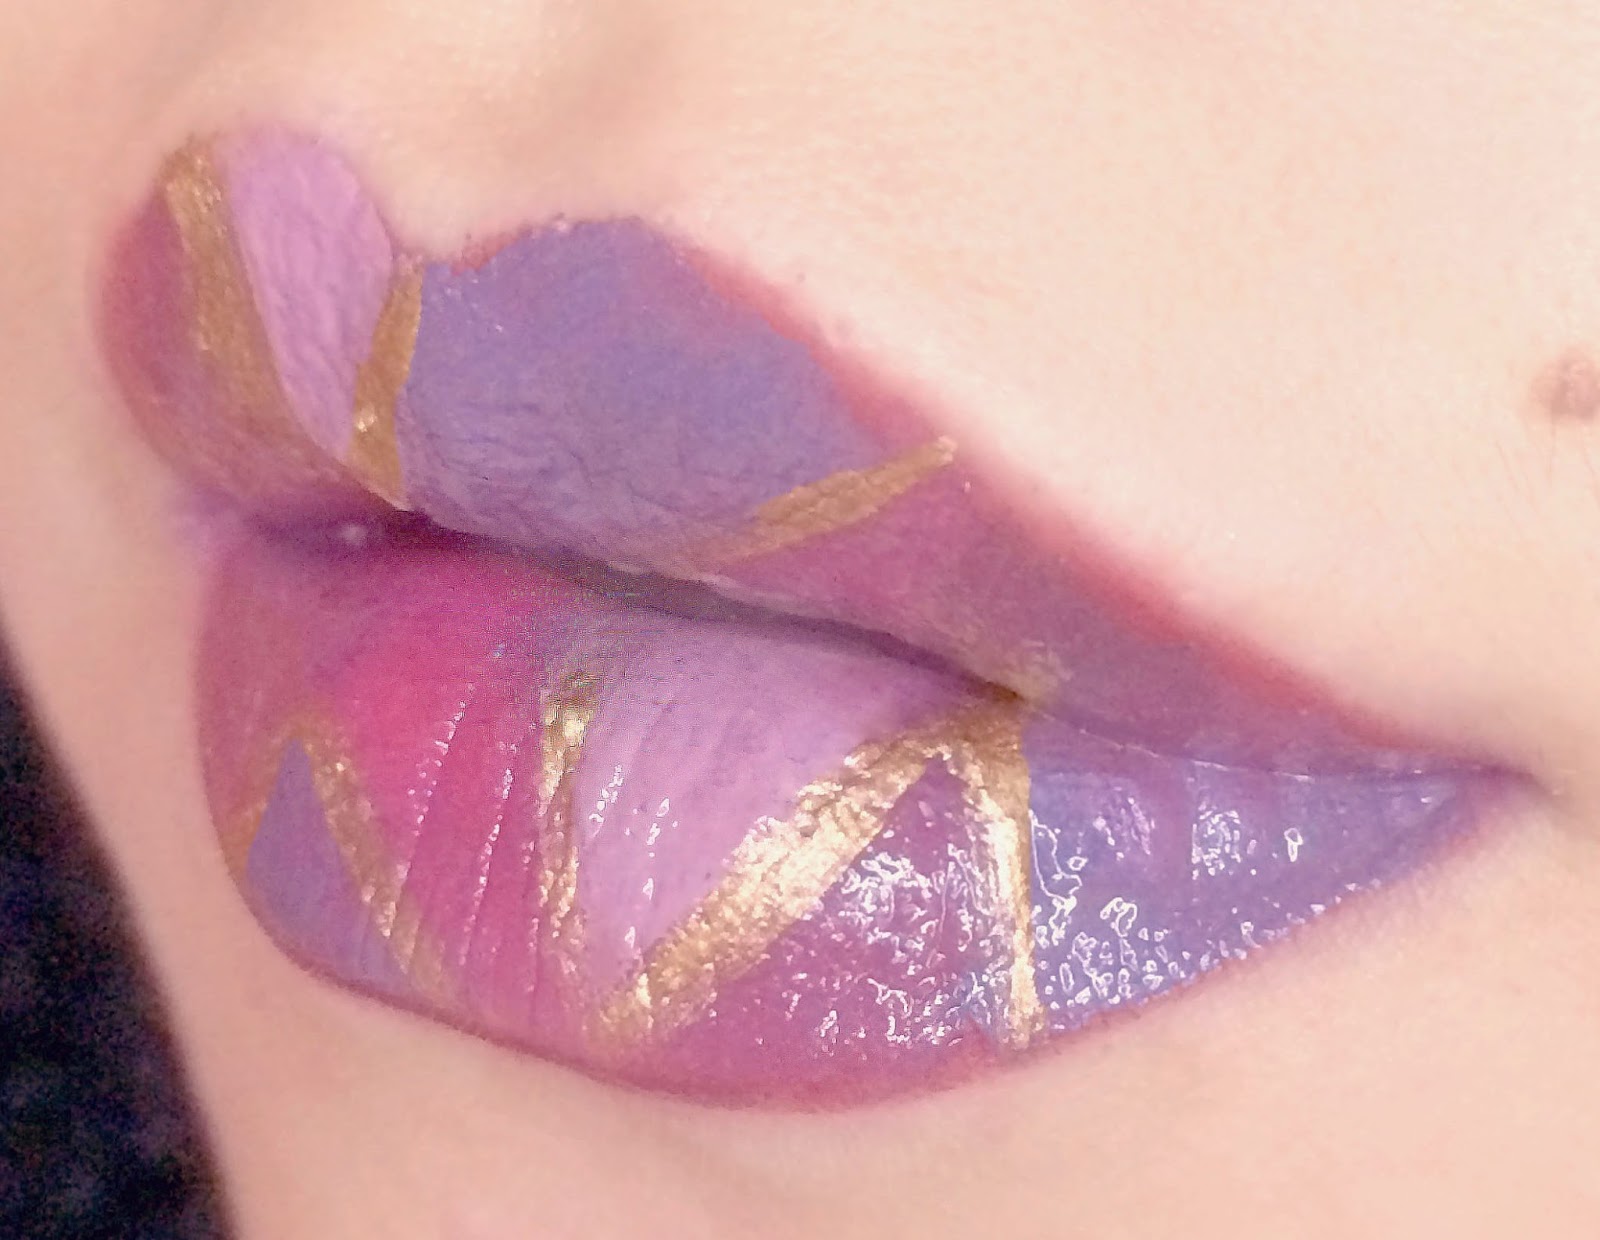 TKB Halloween Color-Changing Lip Gloss Kit